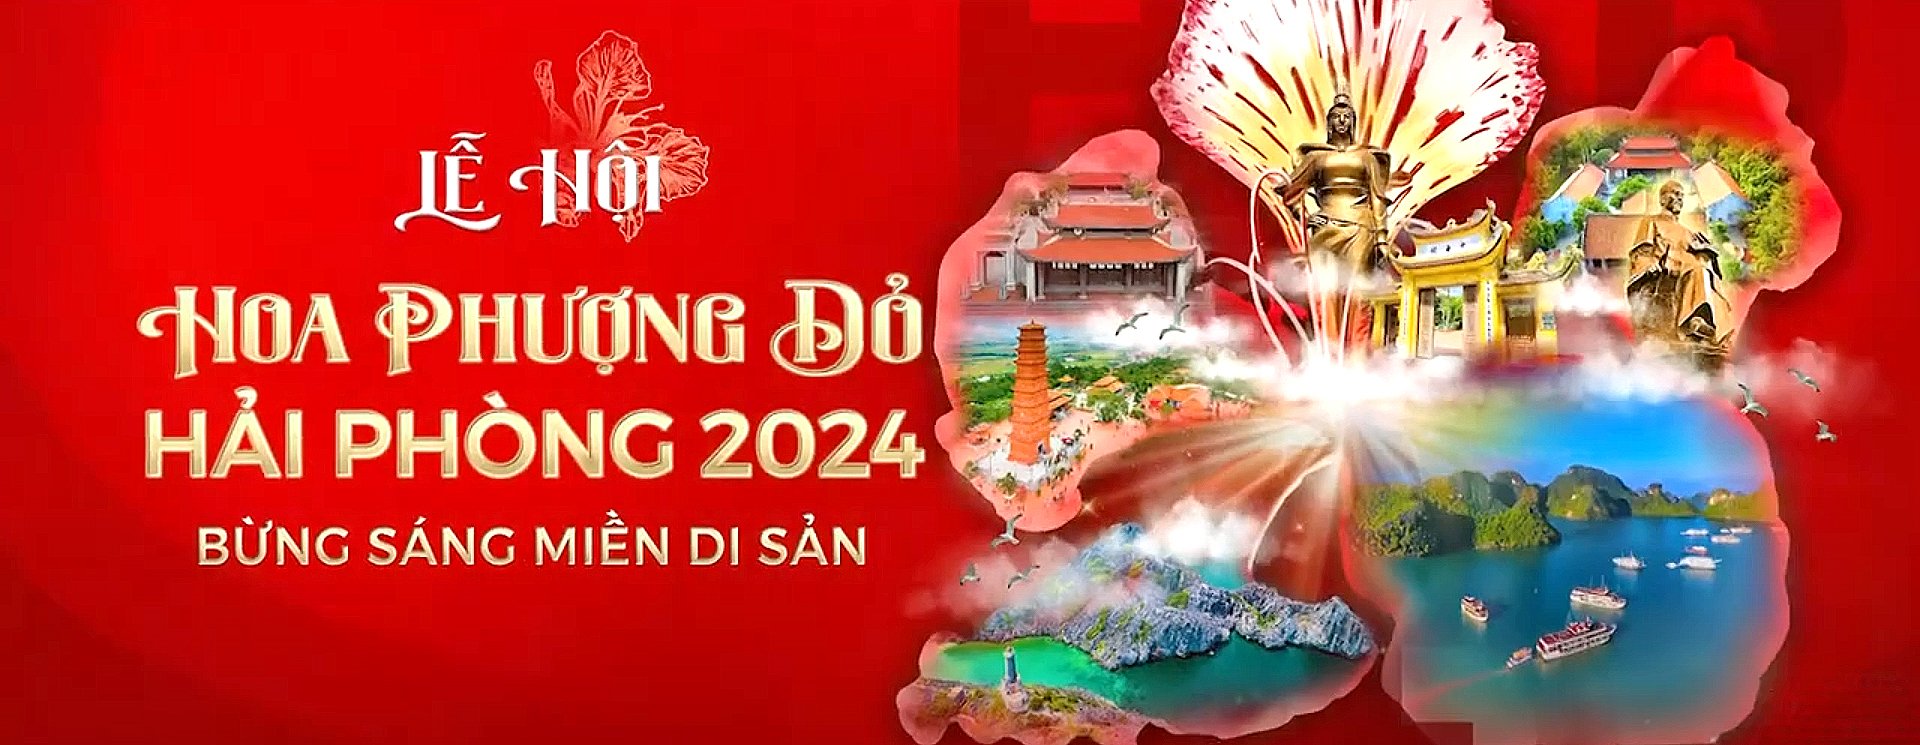 78 sự kiện tiêu biểu trong Lễ hội Hoa Phượng Đỏ - Hải Phòng 2024